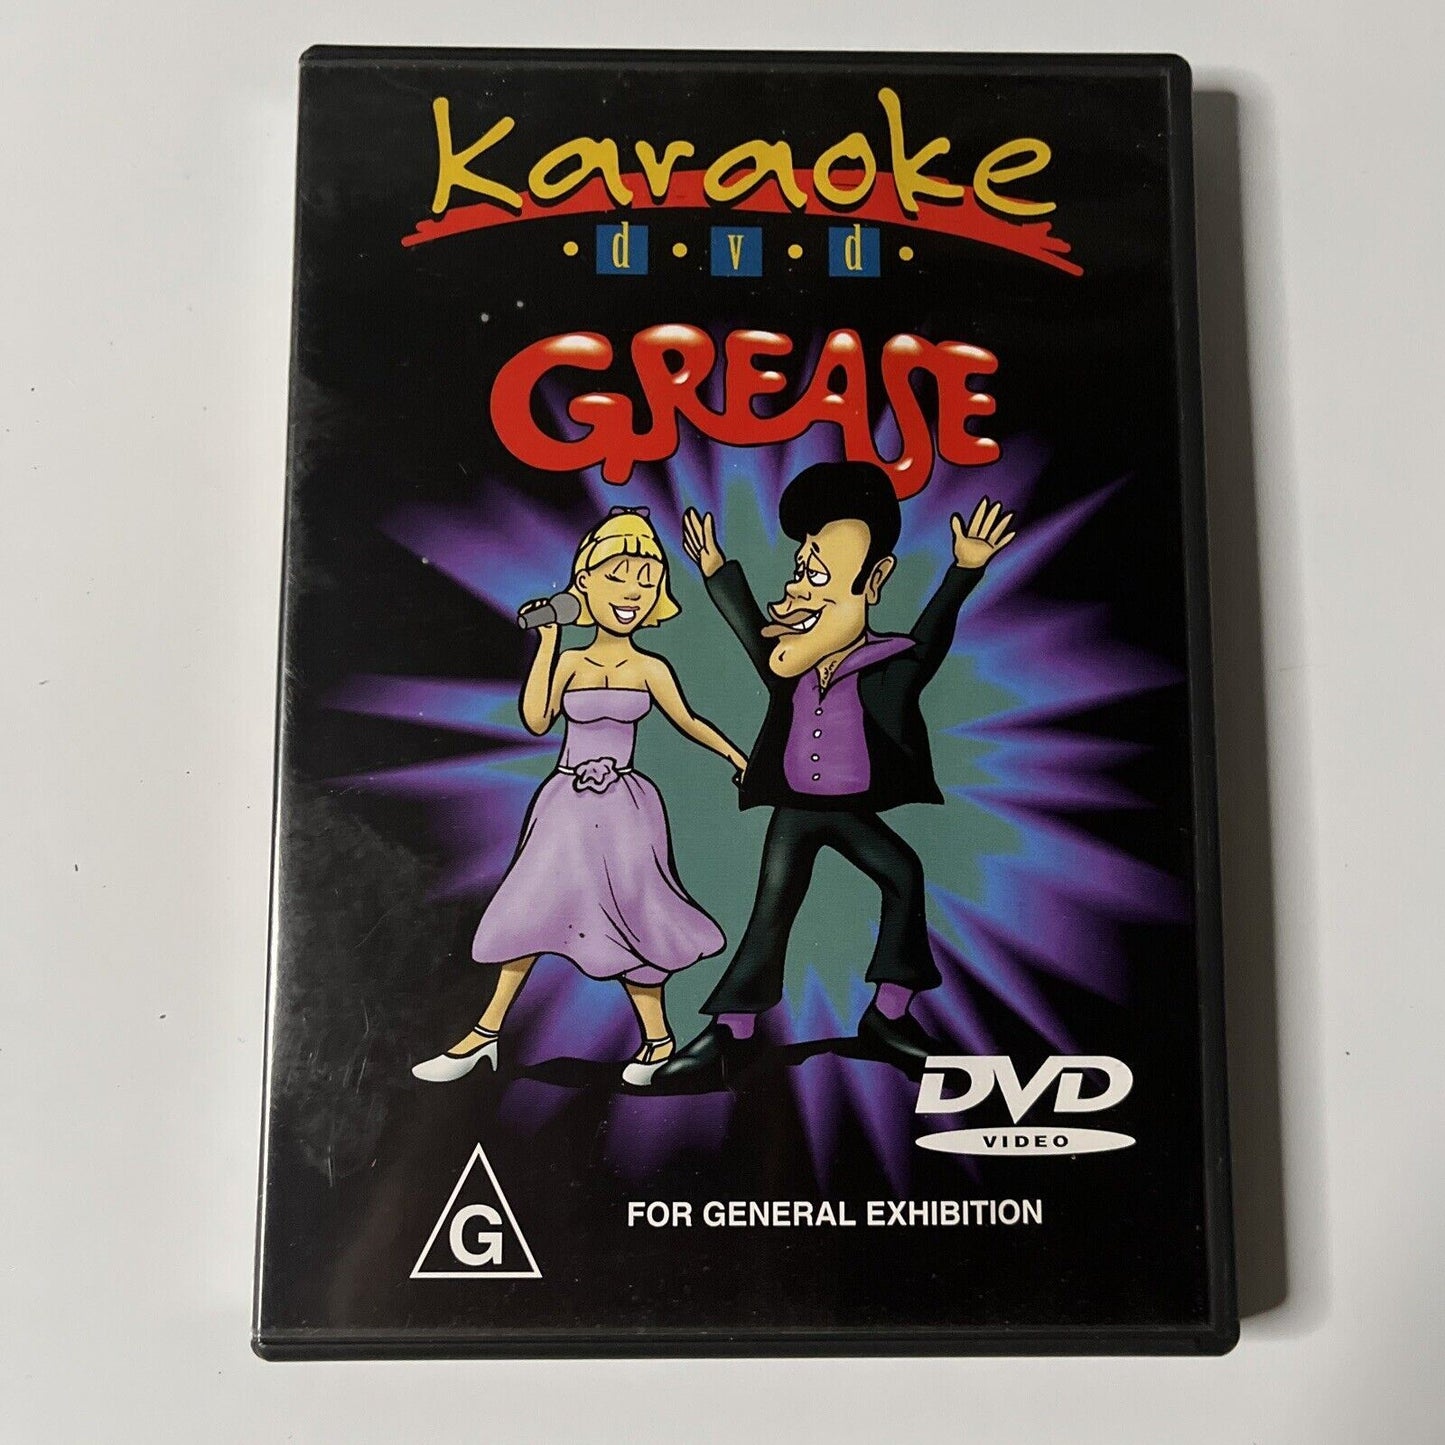 Karaoke - Grease (DVD) NEW All Regions